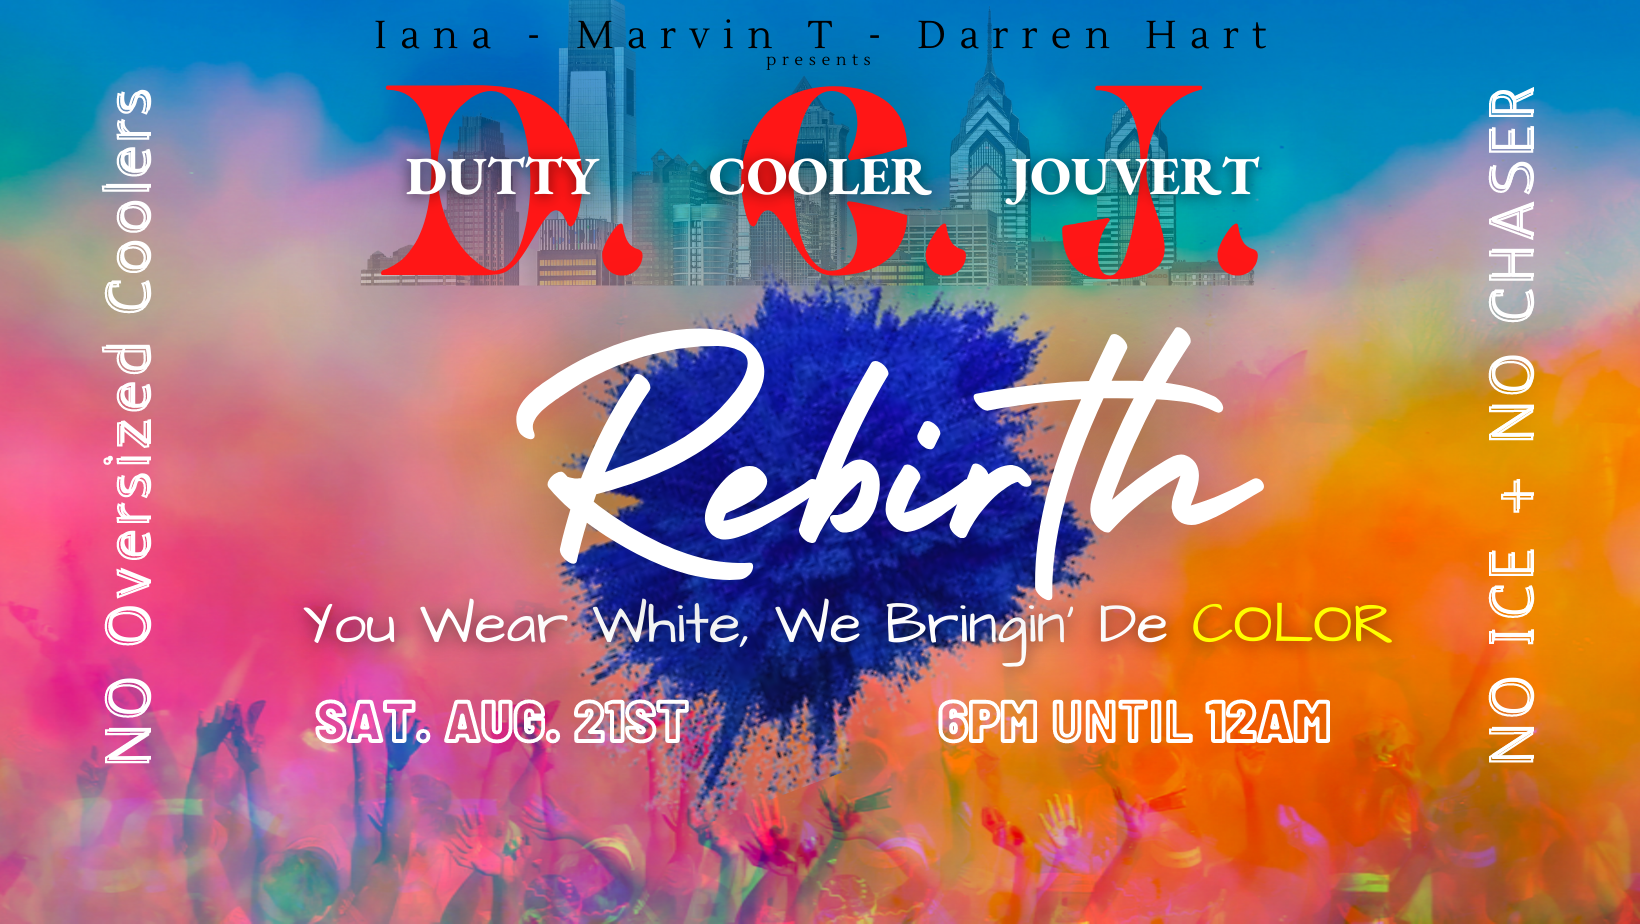 DUTTY COOLER JOUVERT - Rebirth